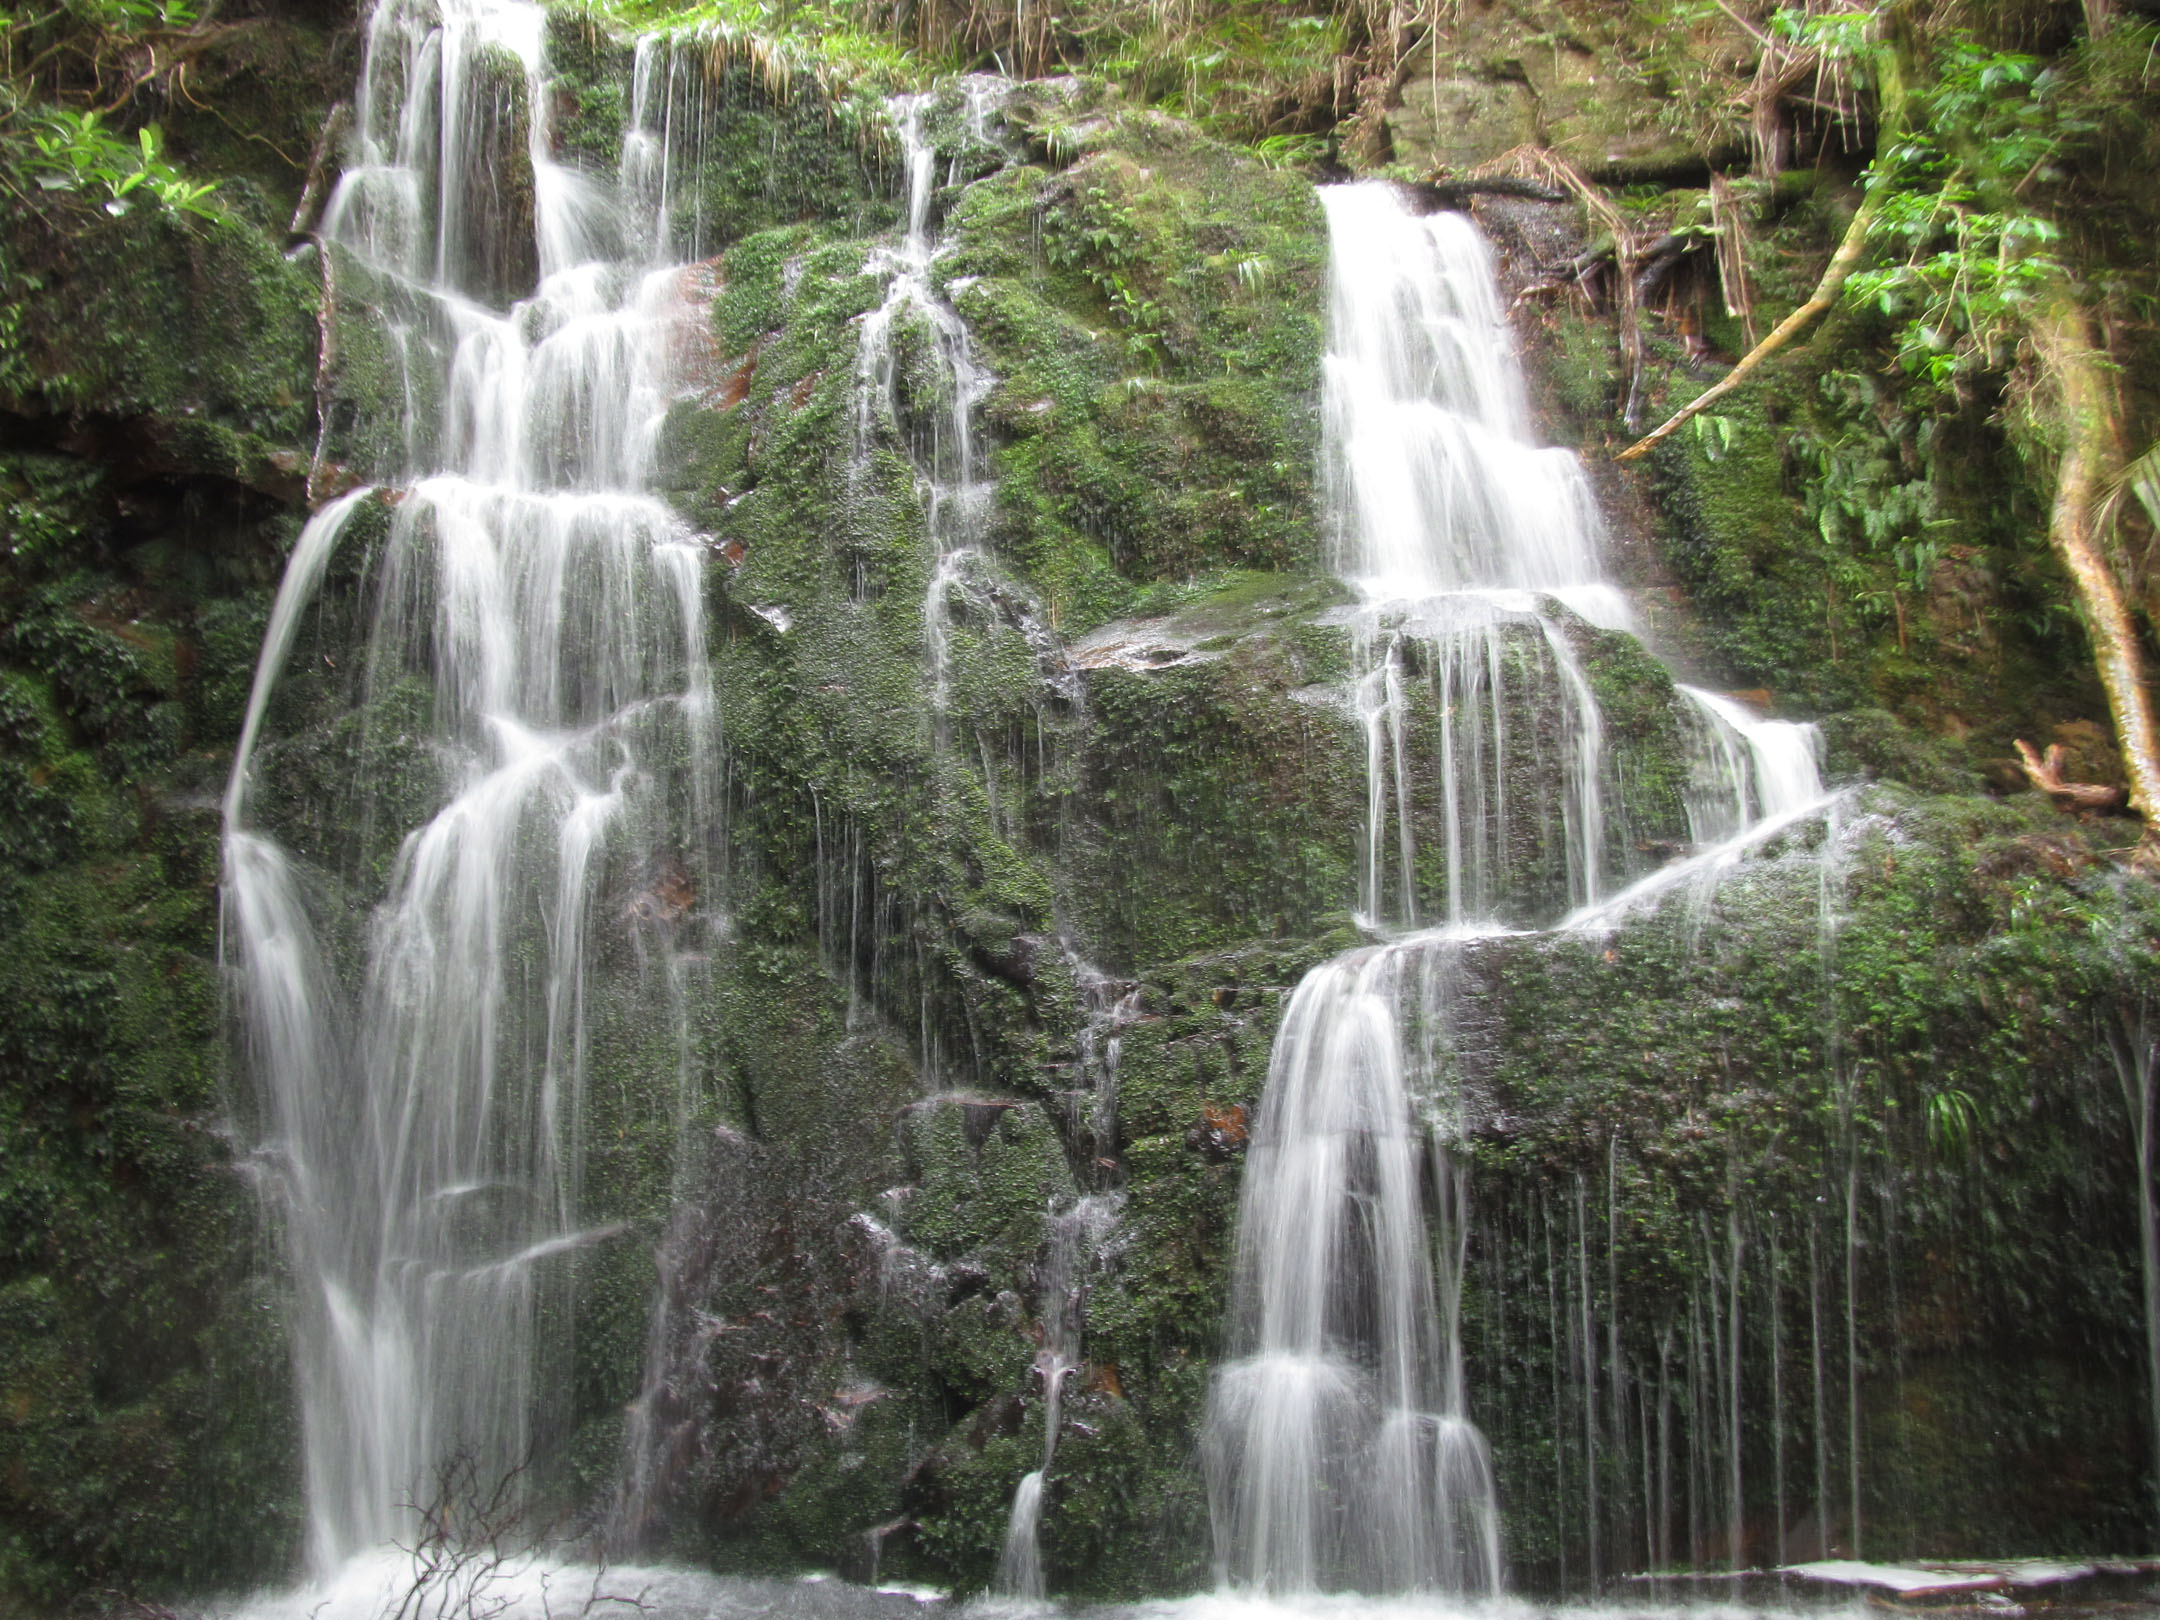 Waterfall beside trap line R2, Puketi plateau. Photo by Asher Wallace